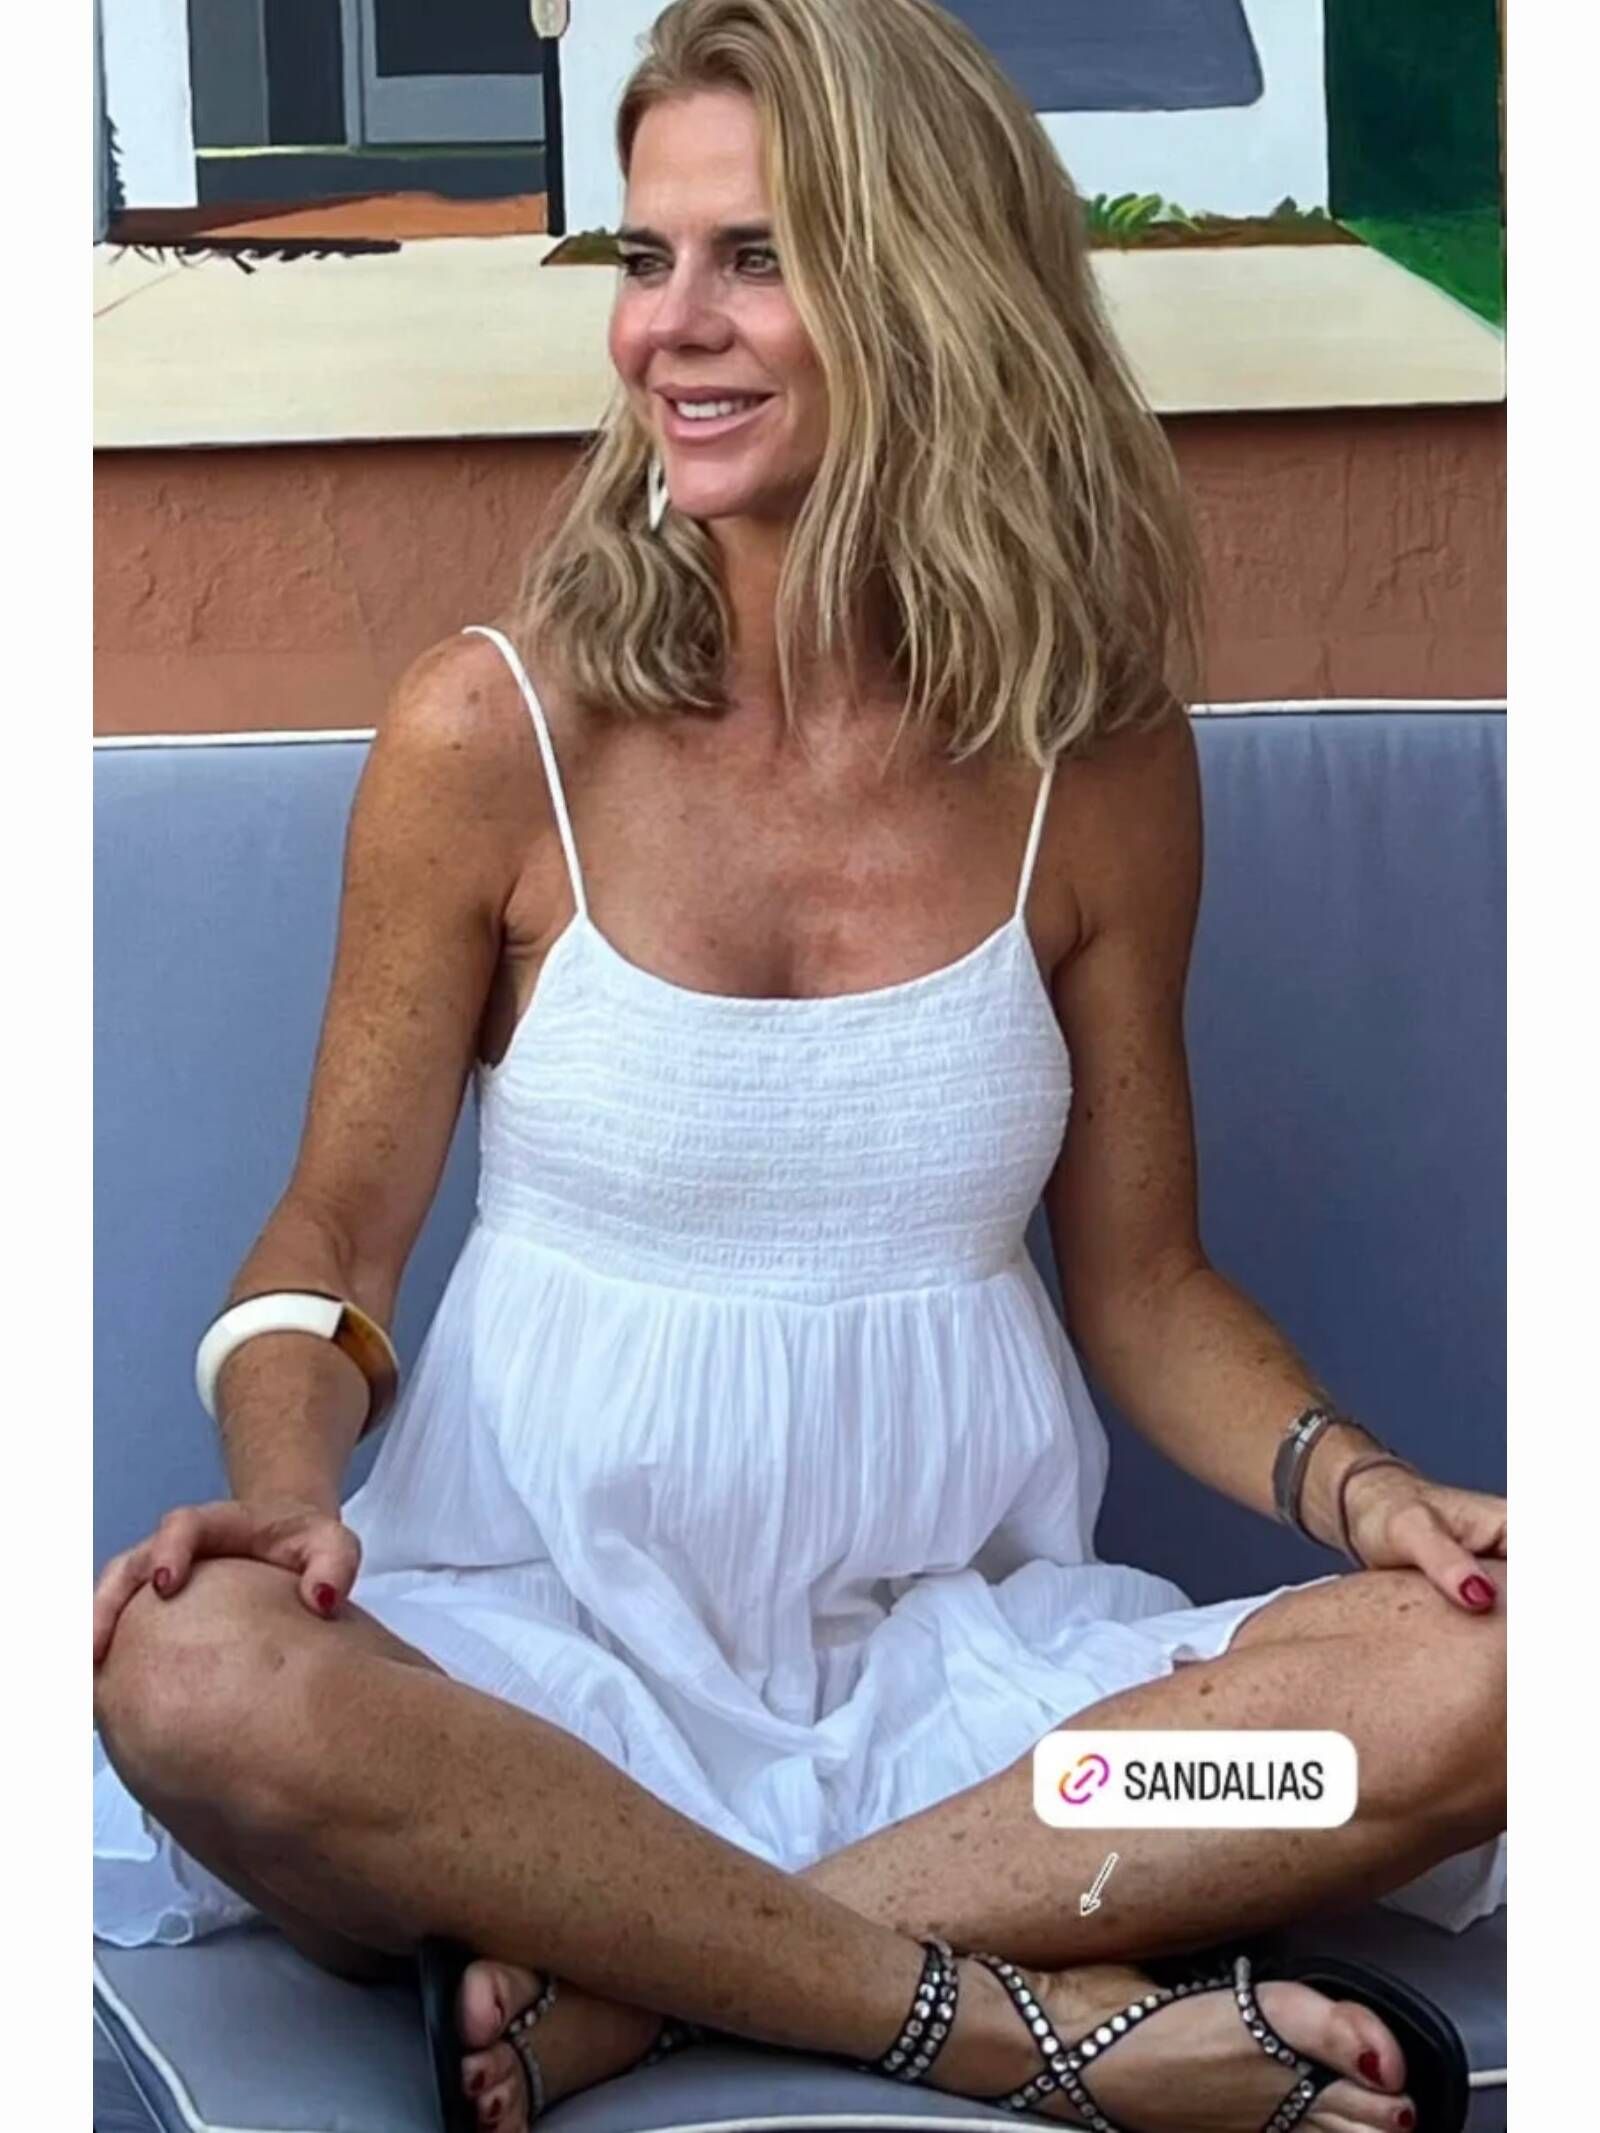 Amelia Bono con sandalias de Zara en unas historias de sus redes sociales. (Instagram/@ameliabono)